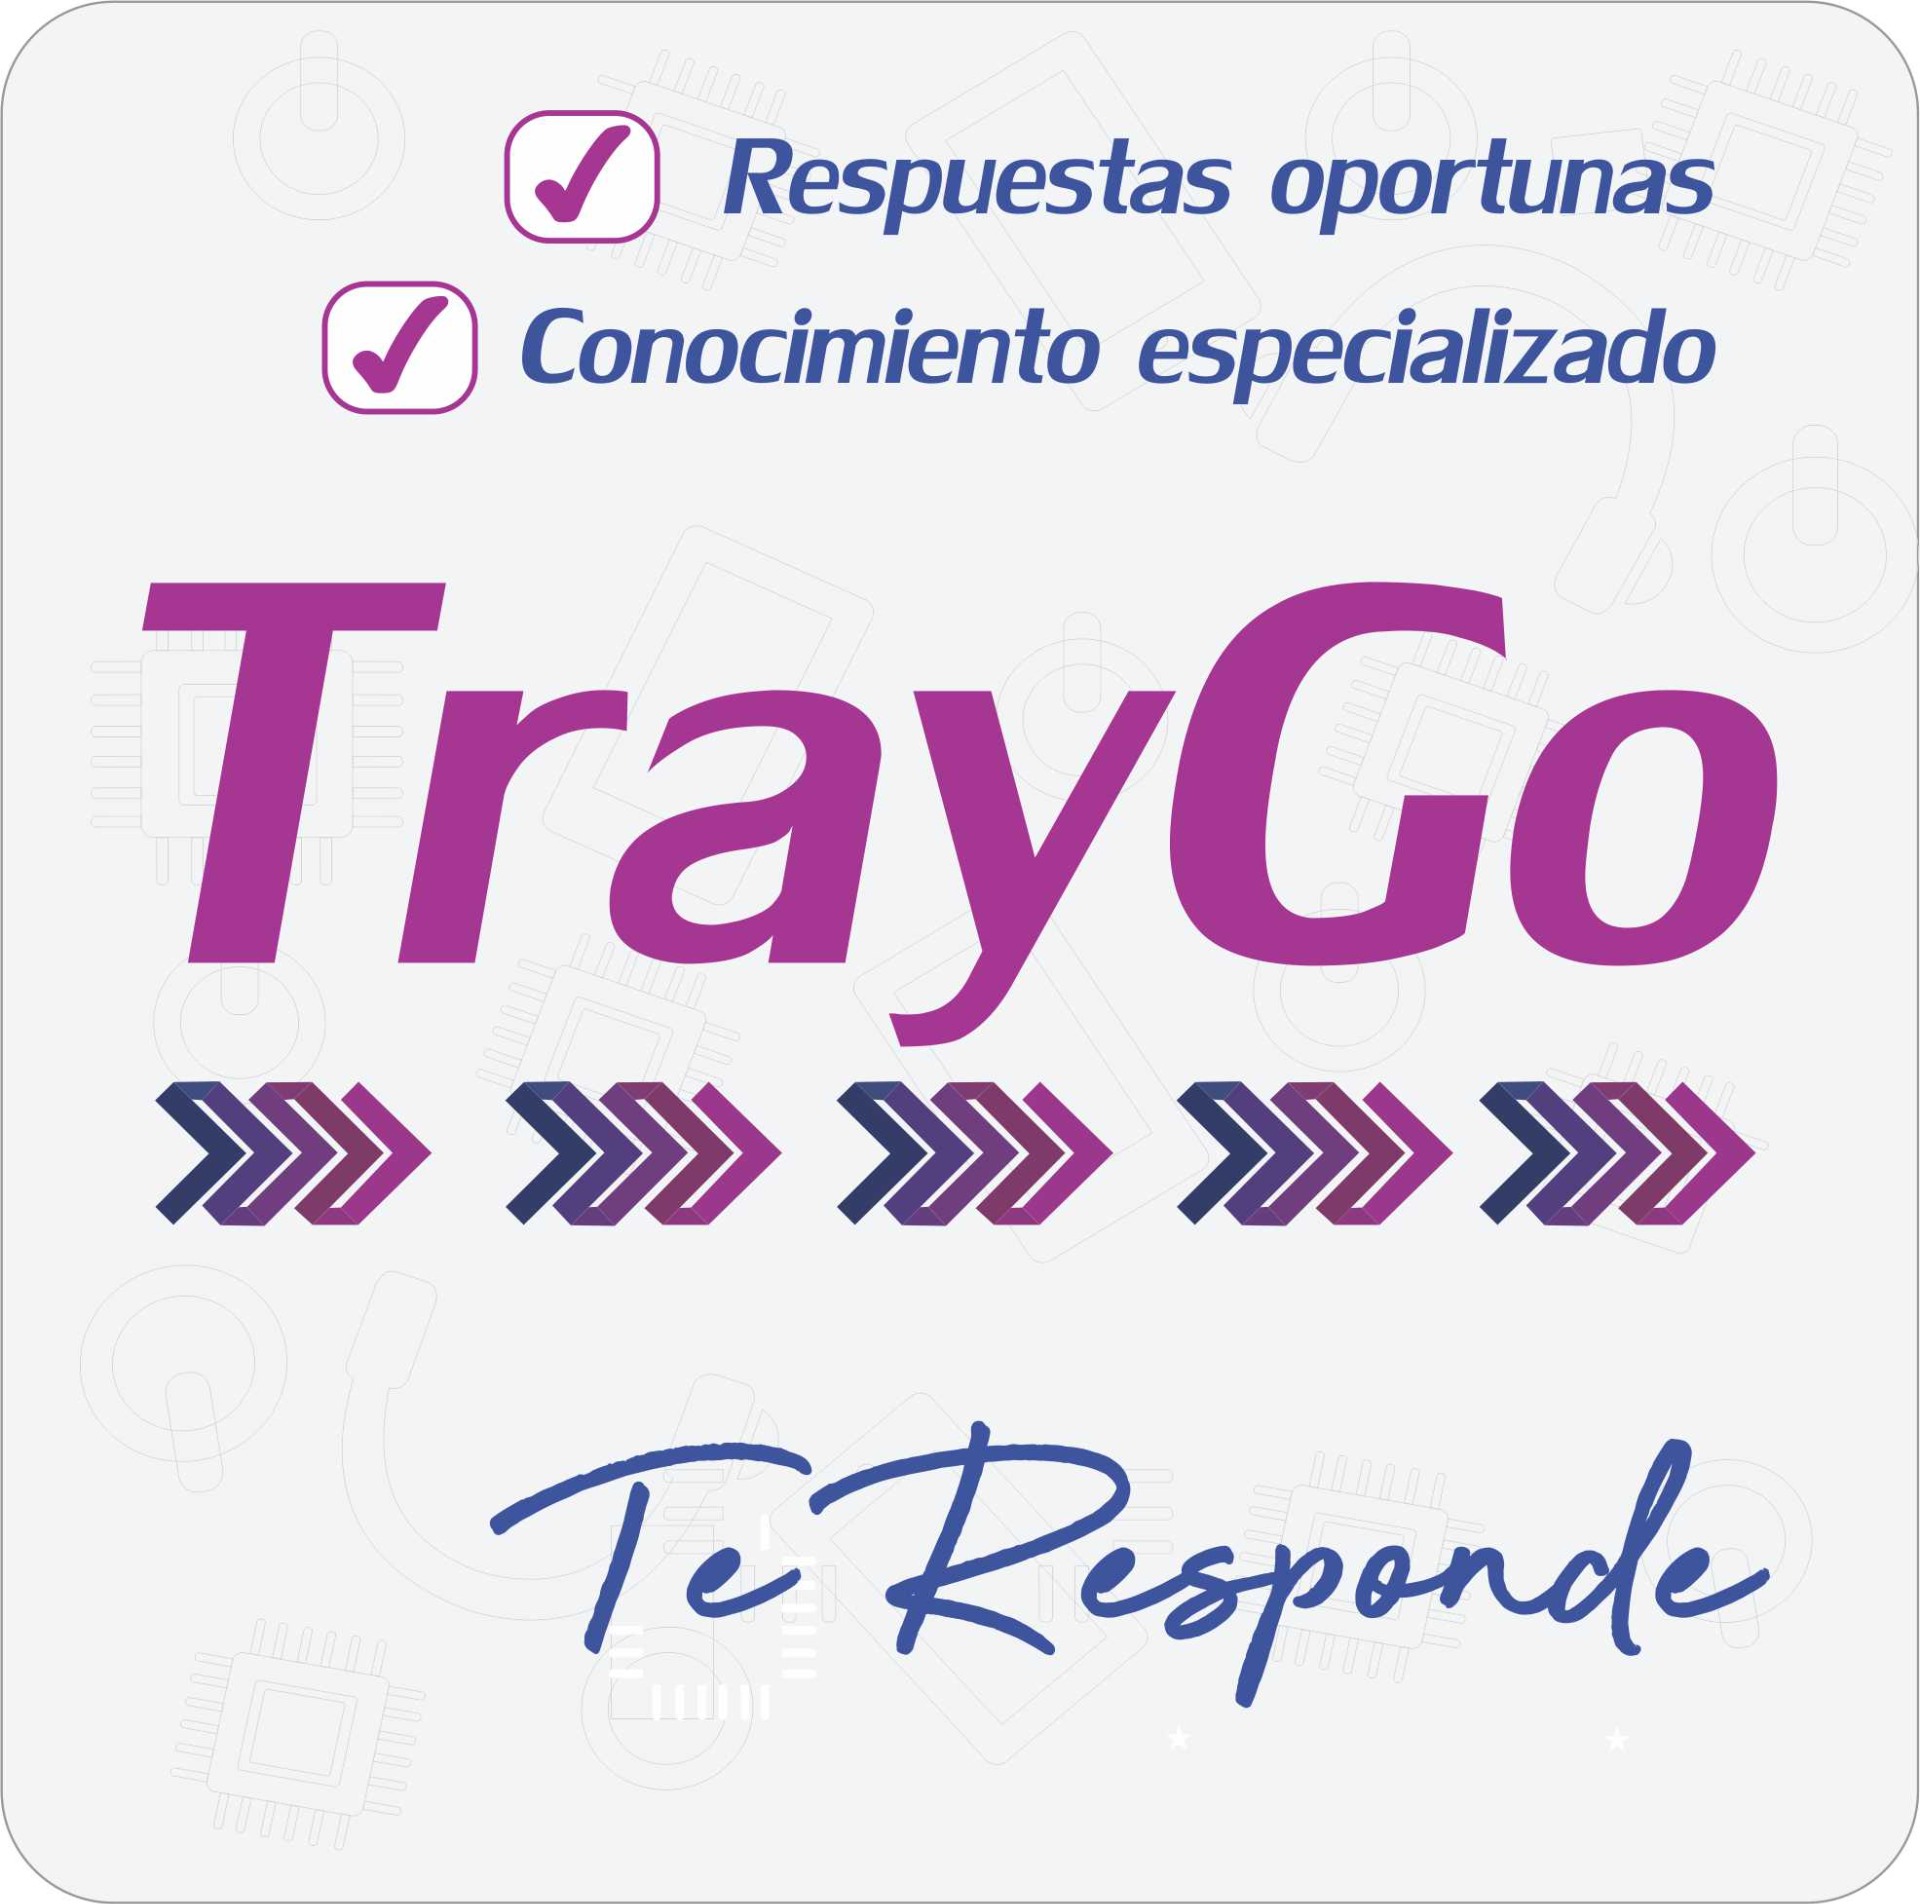 TrayGo